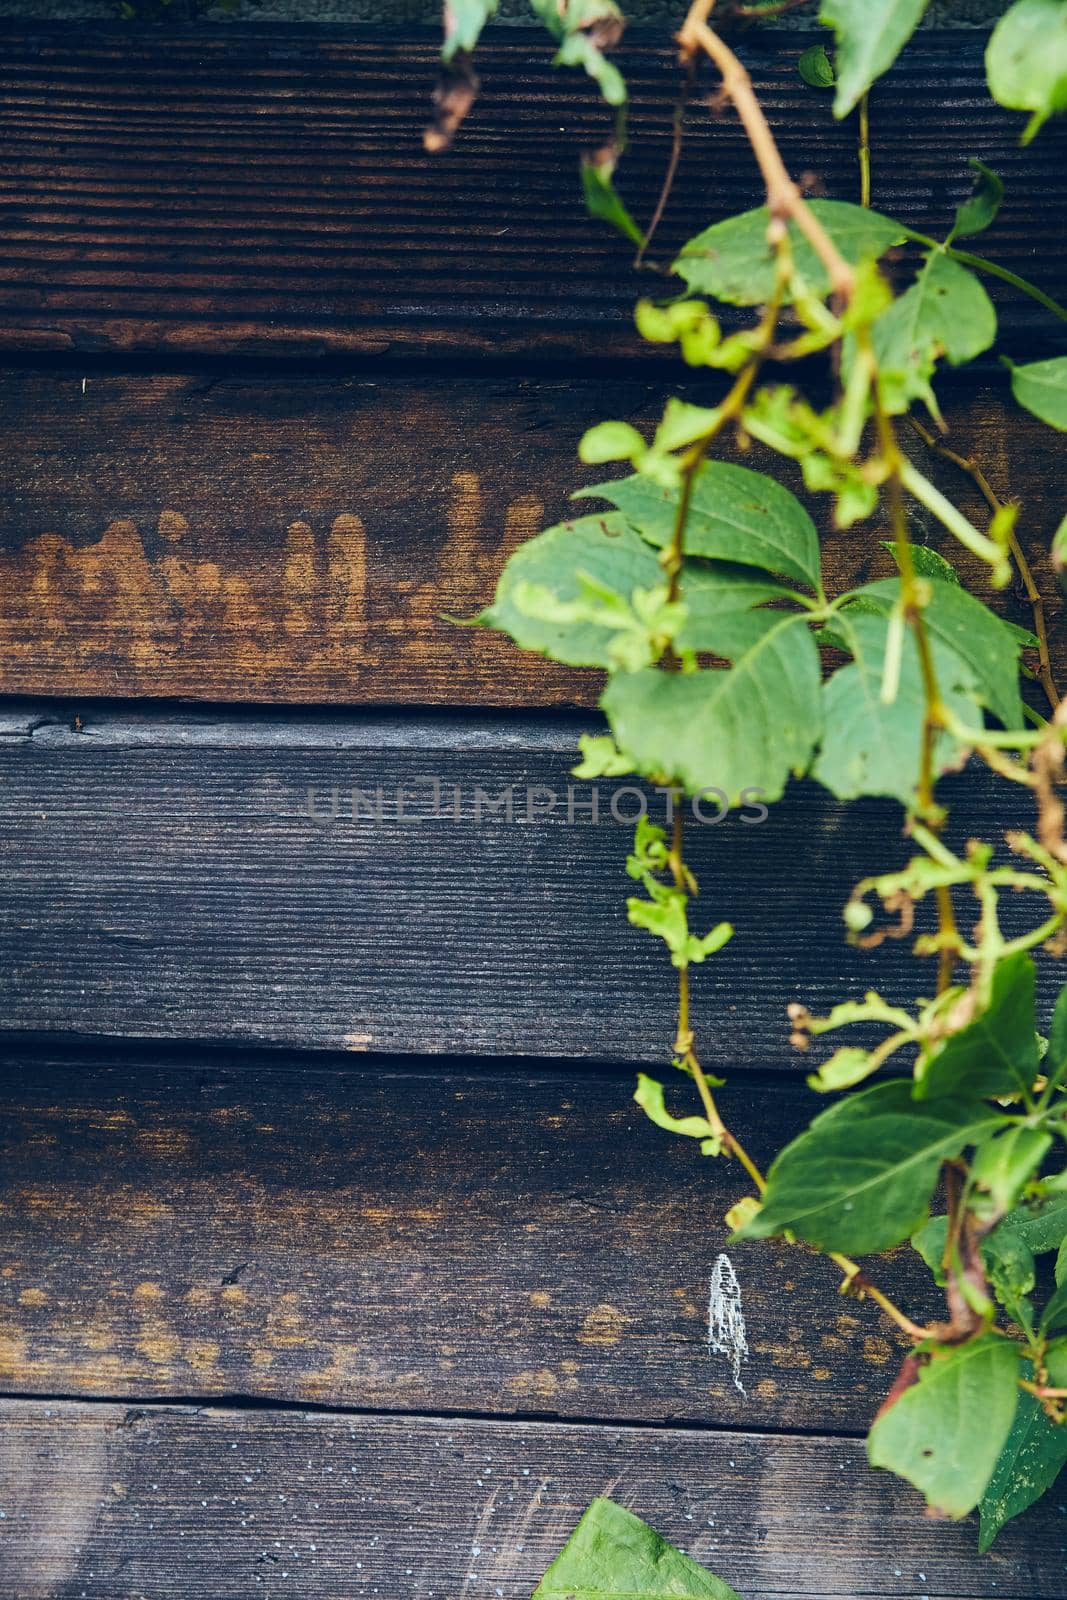 Image of Green vines growing against dark brown wood boards